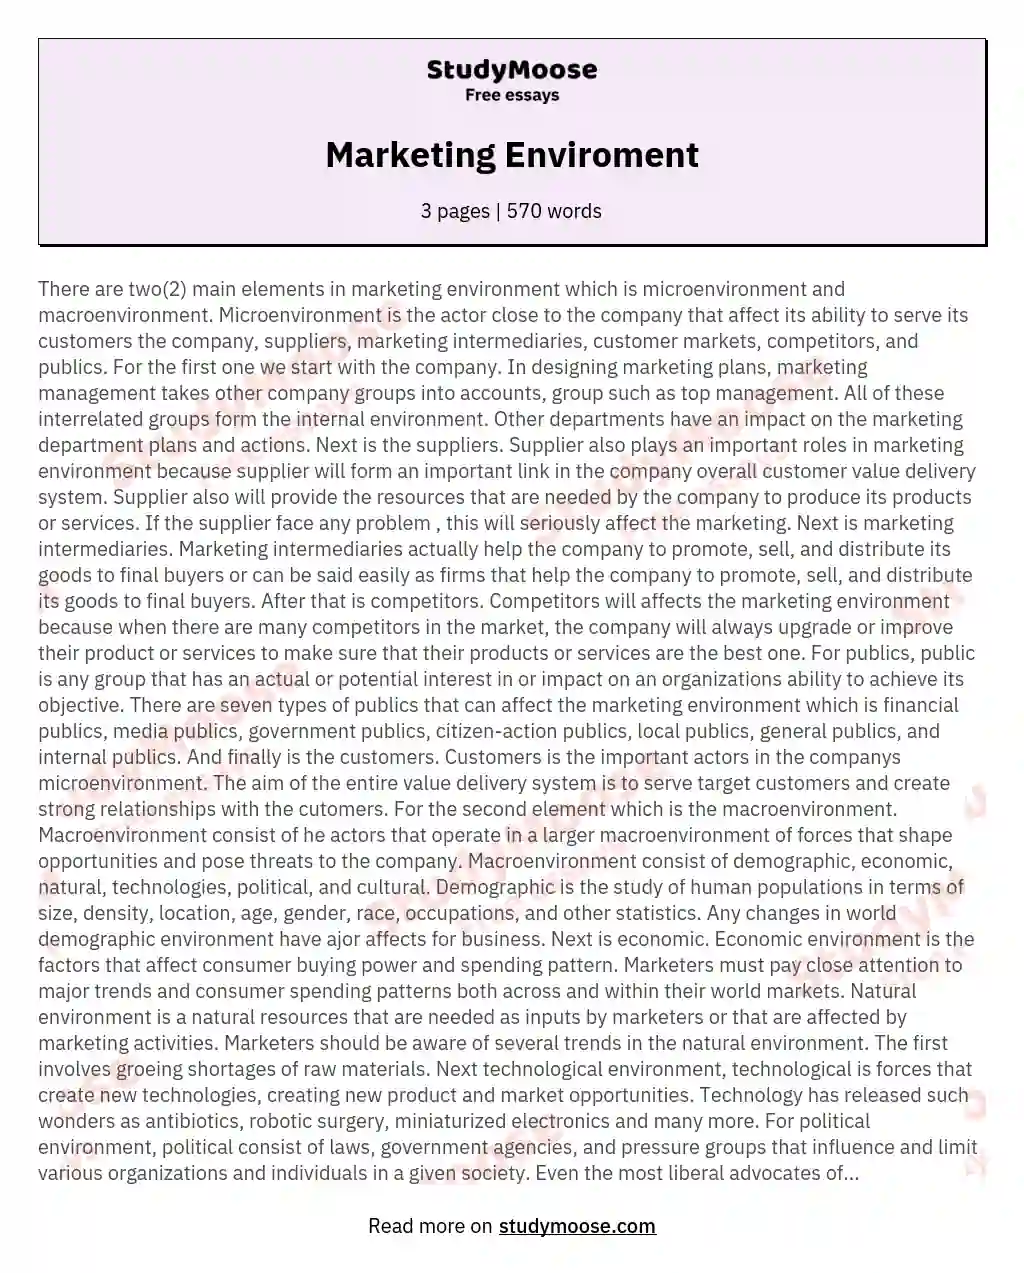 Marketing Enviroment essay